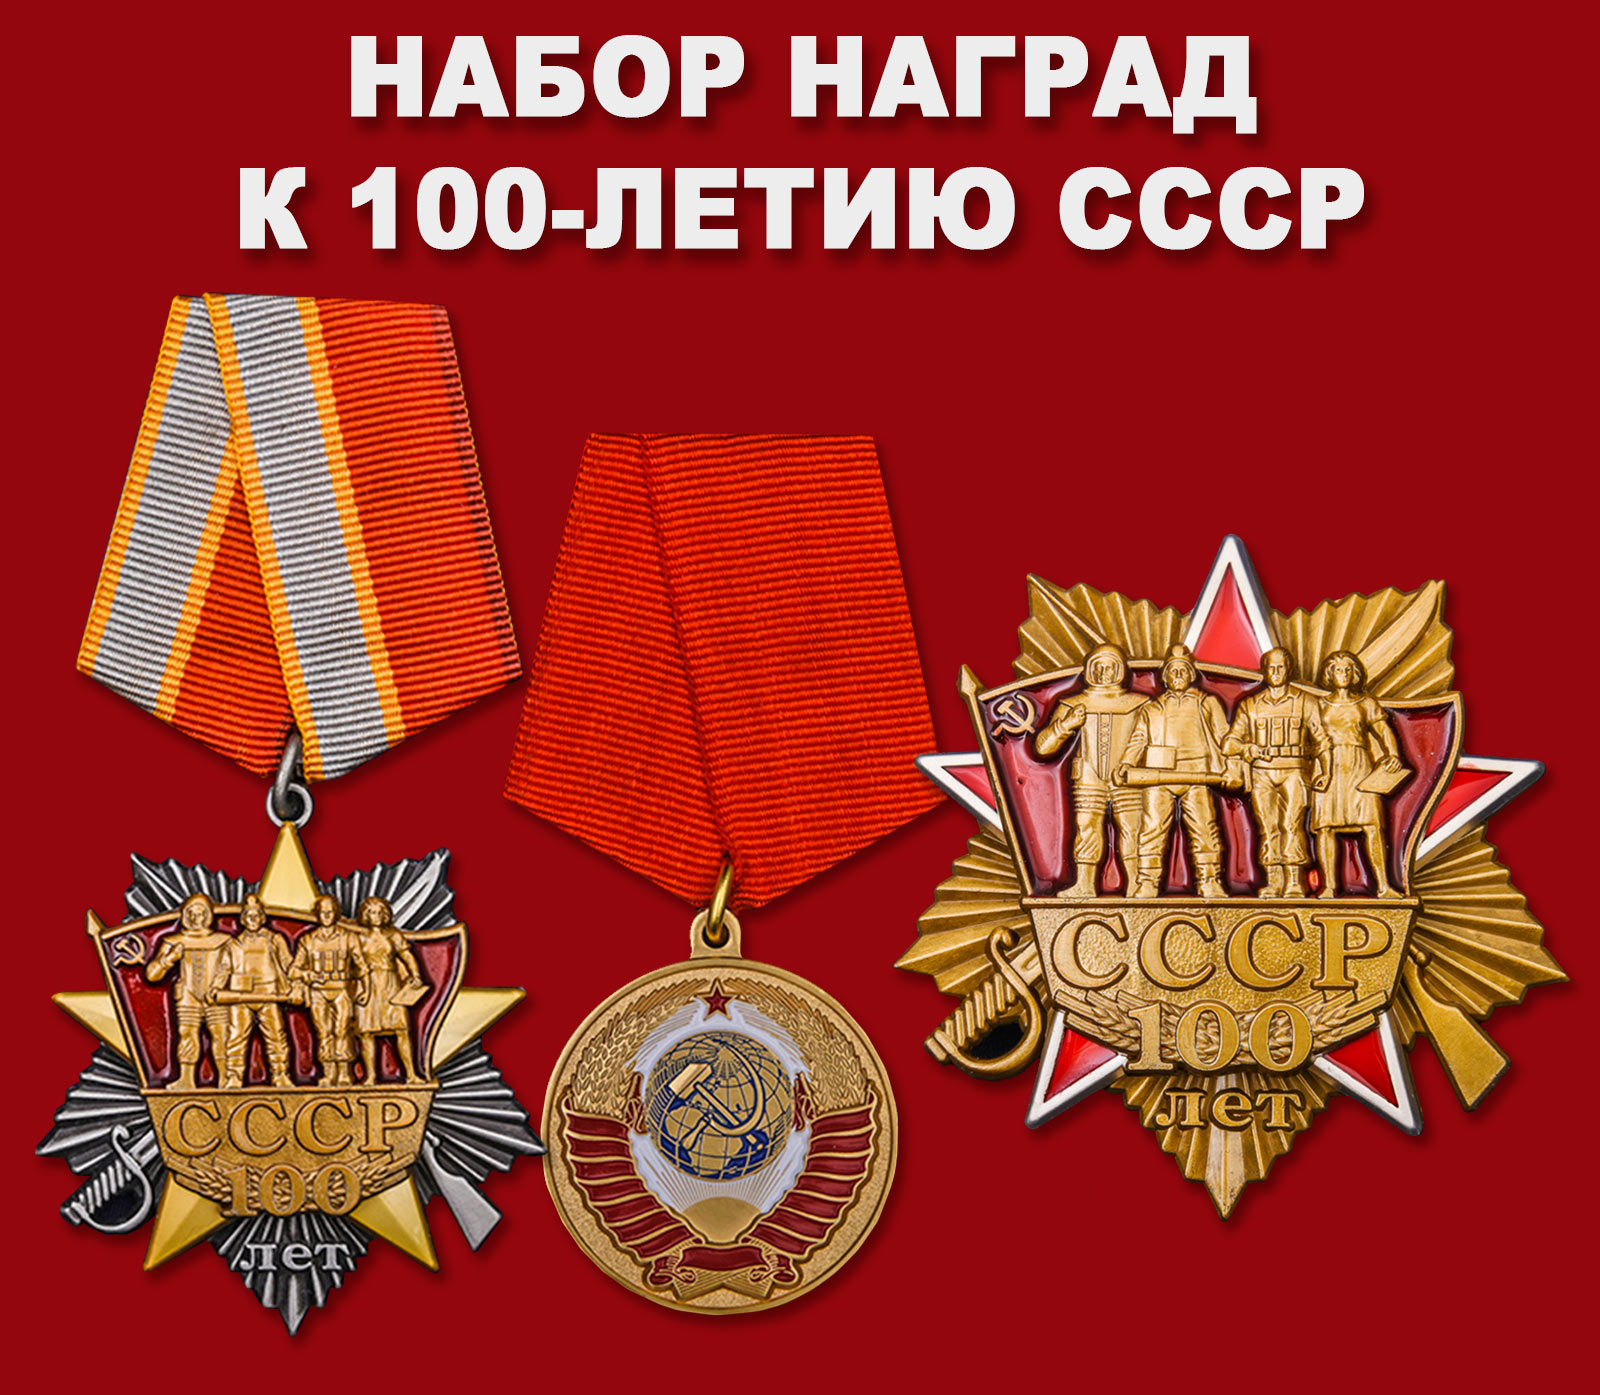 Купить набор наград к 100-летию СССР